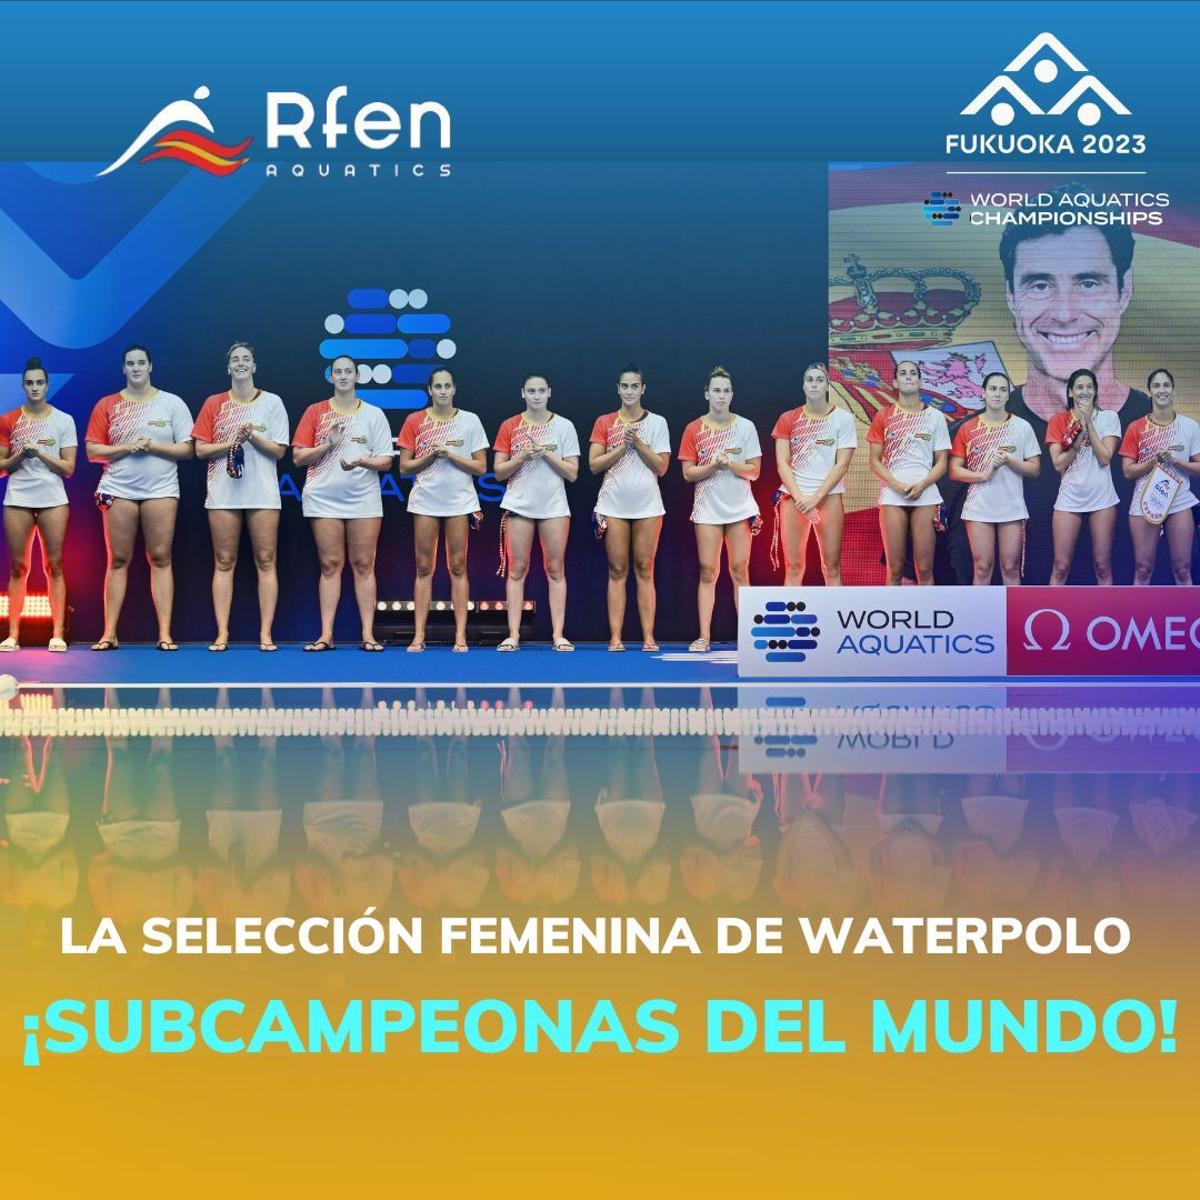 La selección española femenina de waterpolo se ha proclamado subcampeona del mundo en Fukuoka tras caer ante Países Bajos.